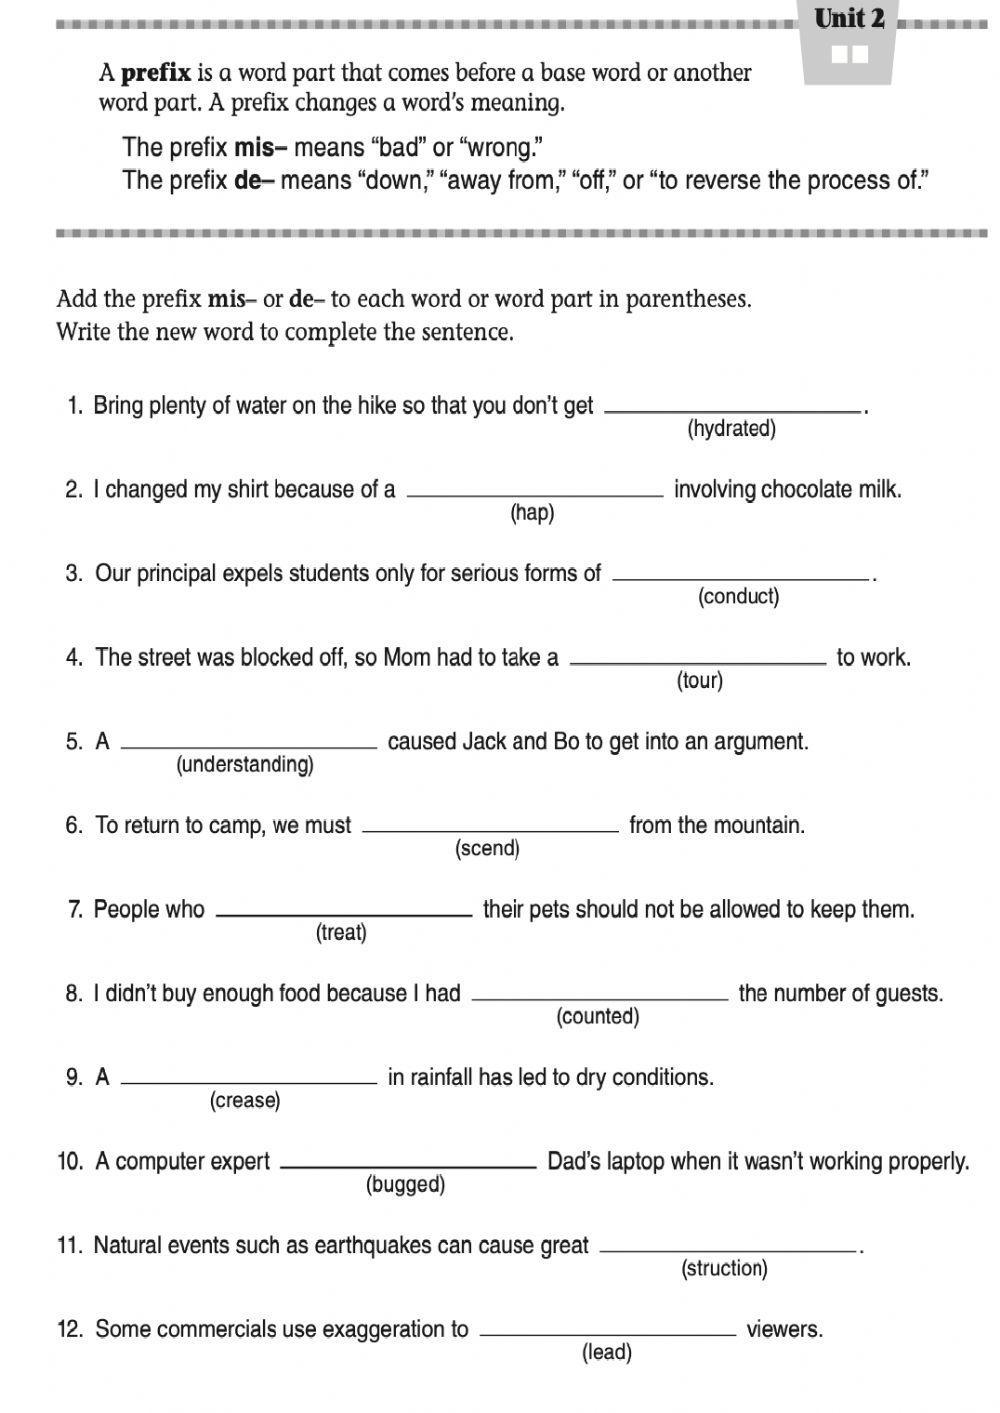 Vocabulary- Prefixes. Practice 1